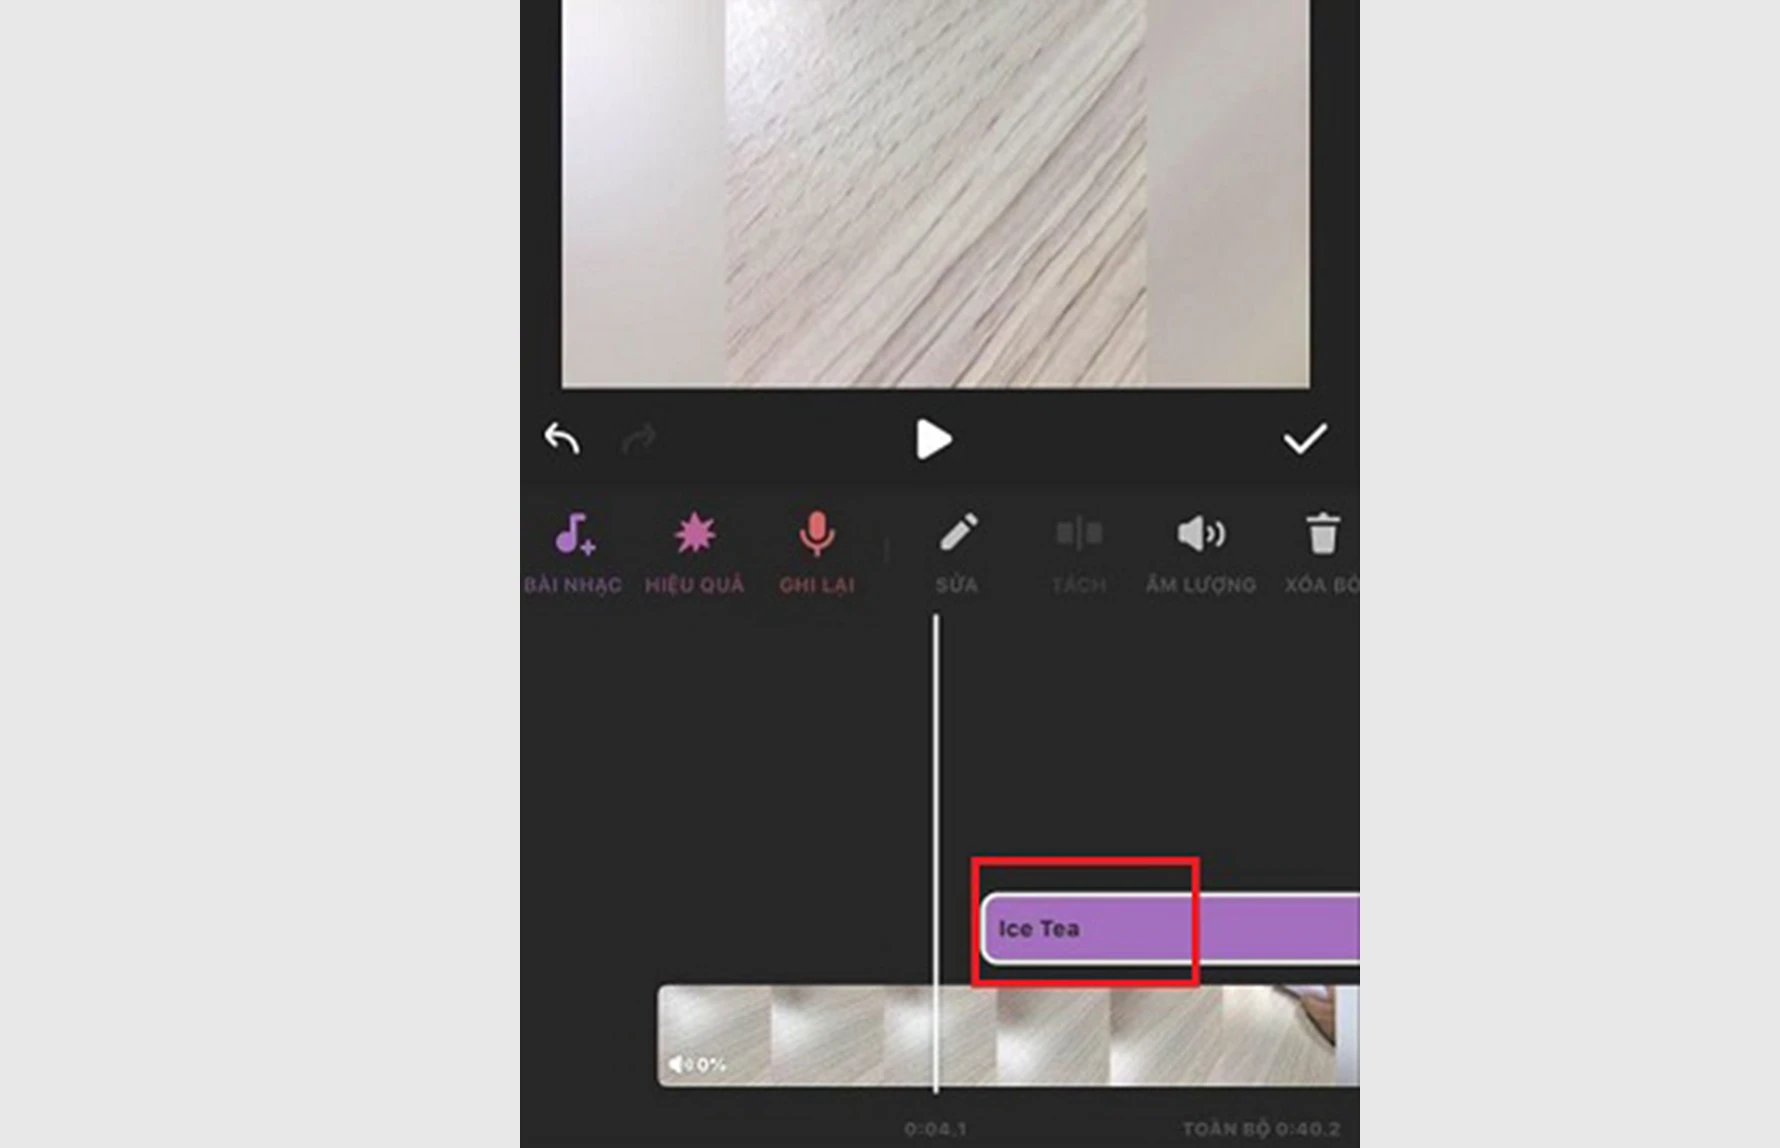 Bước 14: Đoạn nhạc sẽ được tự động chèn lên Video của bạn. Chạm nhấn và giữ để di chuyển đoạn nhạc đến phần phù hợp trên video mình muốn.